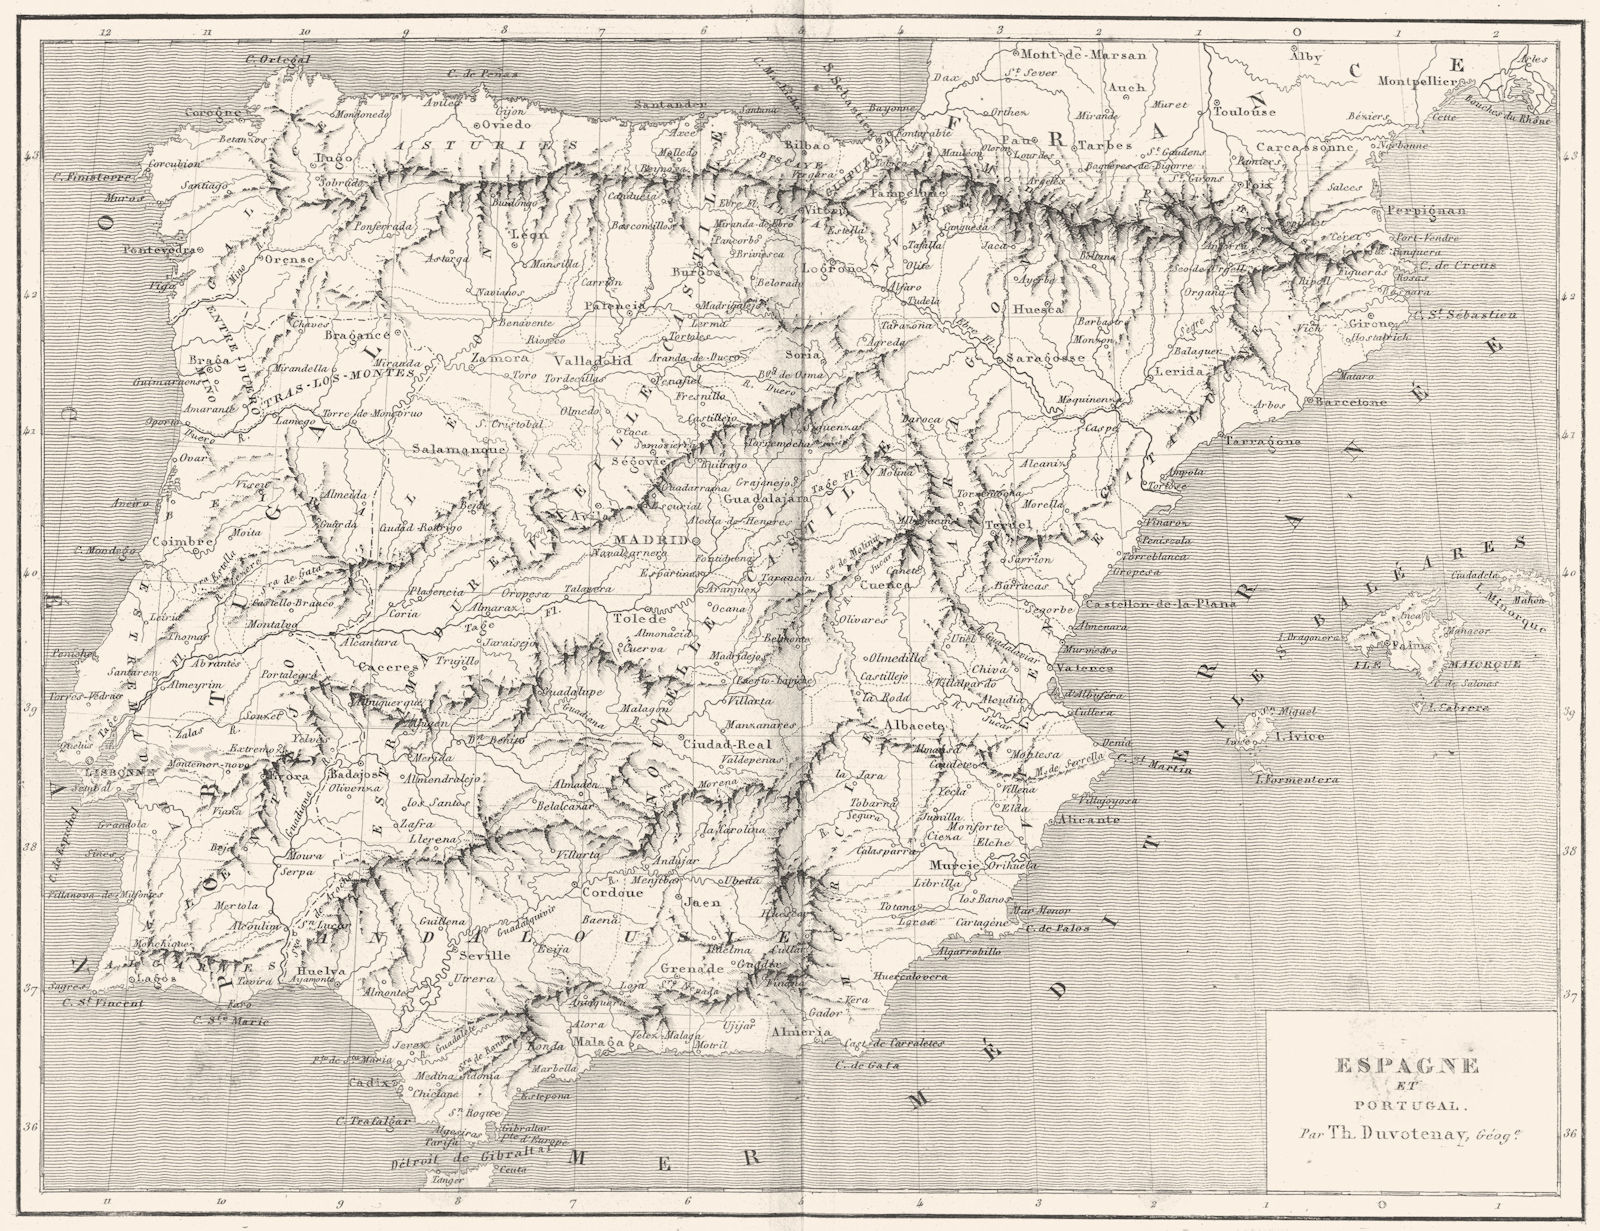 SPAIN. Espagne(Spain)et Portugal 1879 old antique vintage map plan chart